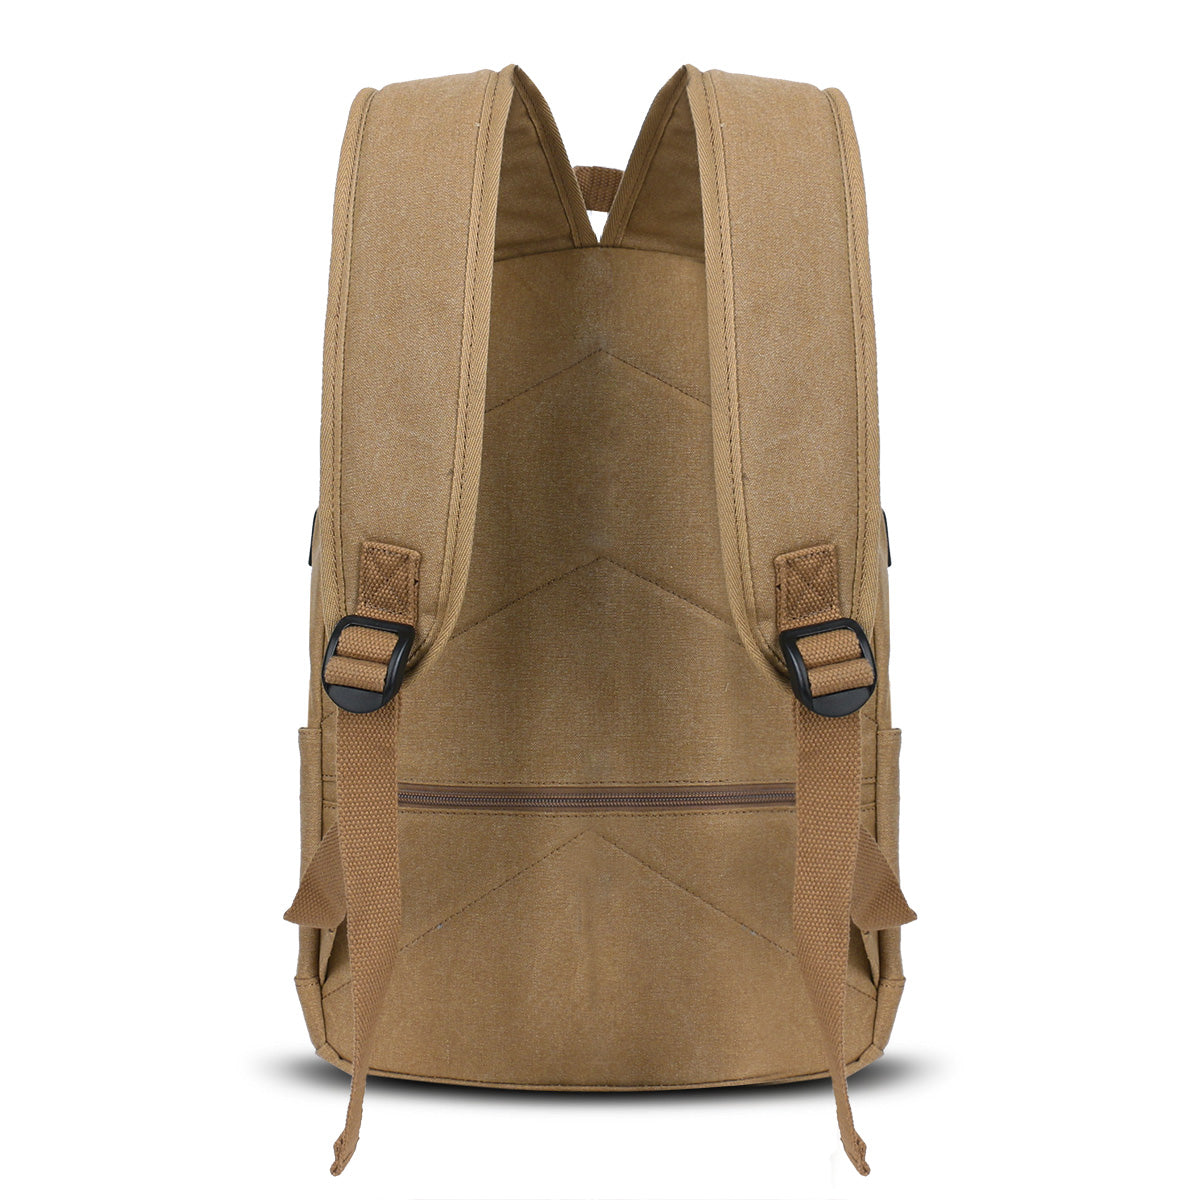 LYDC Functional Backpack Bag